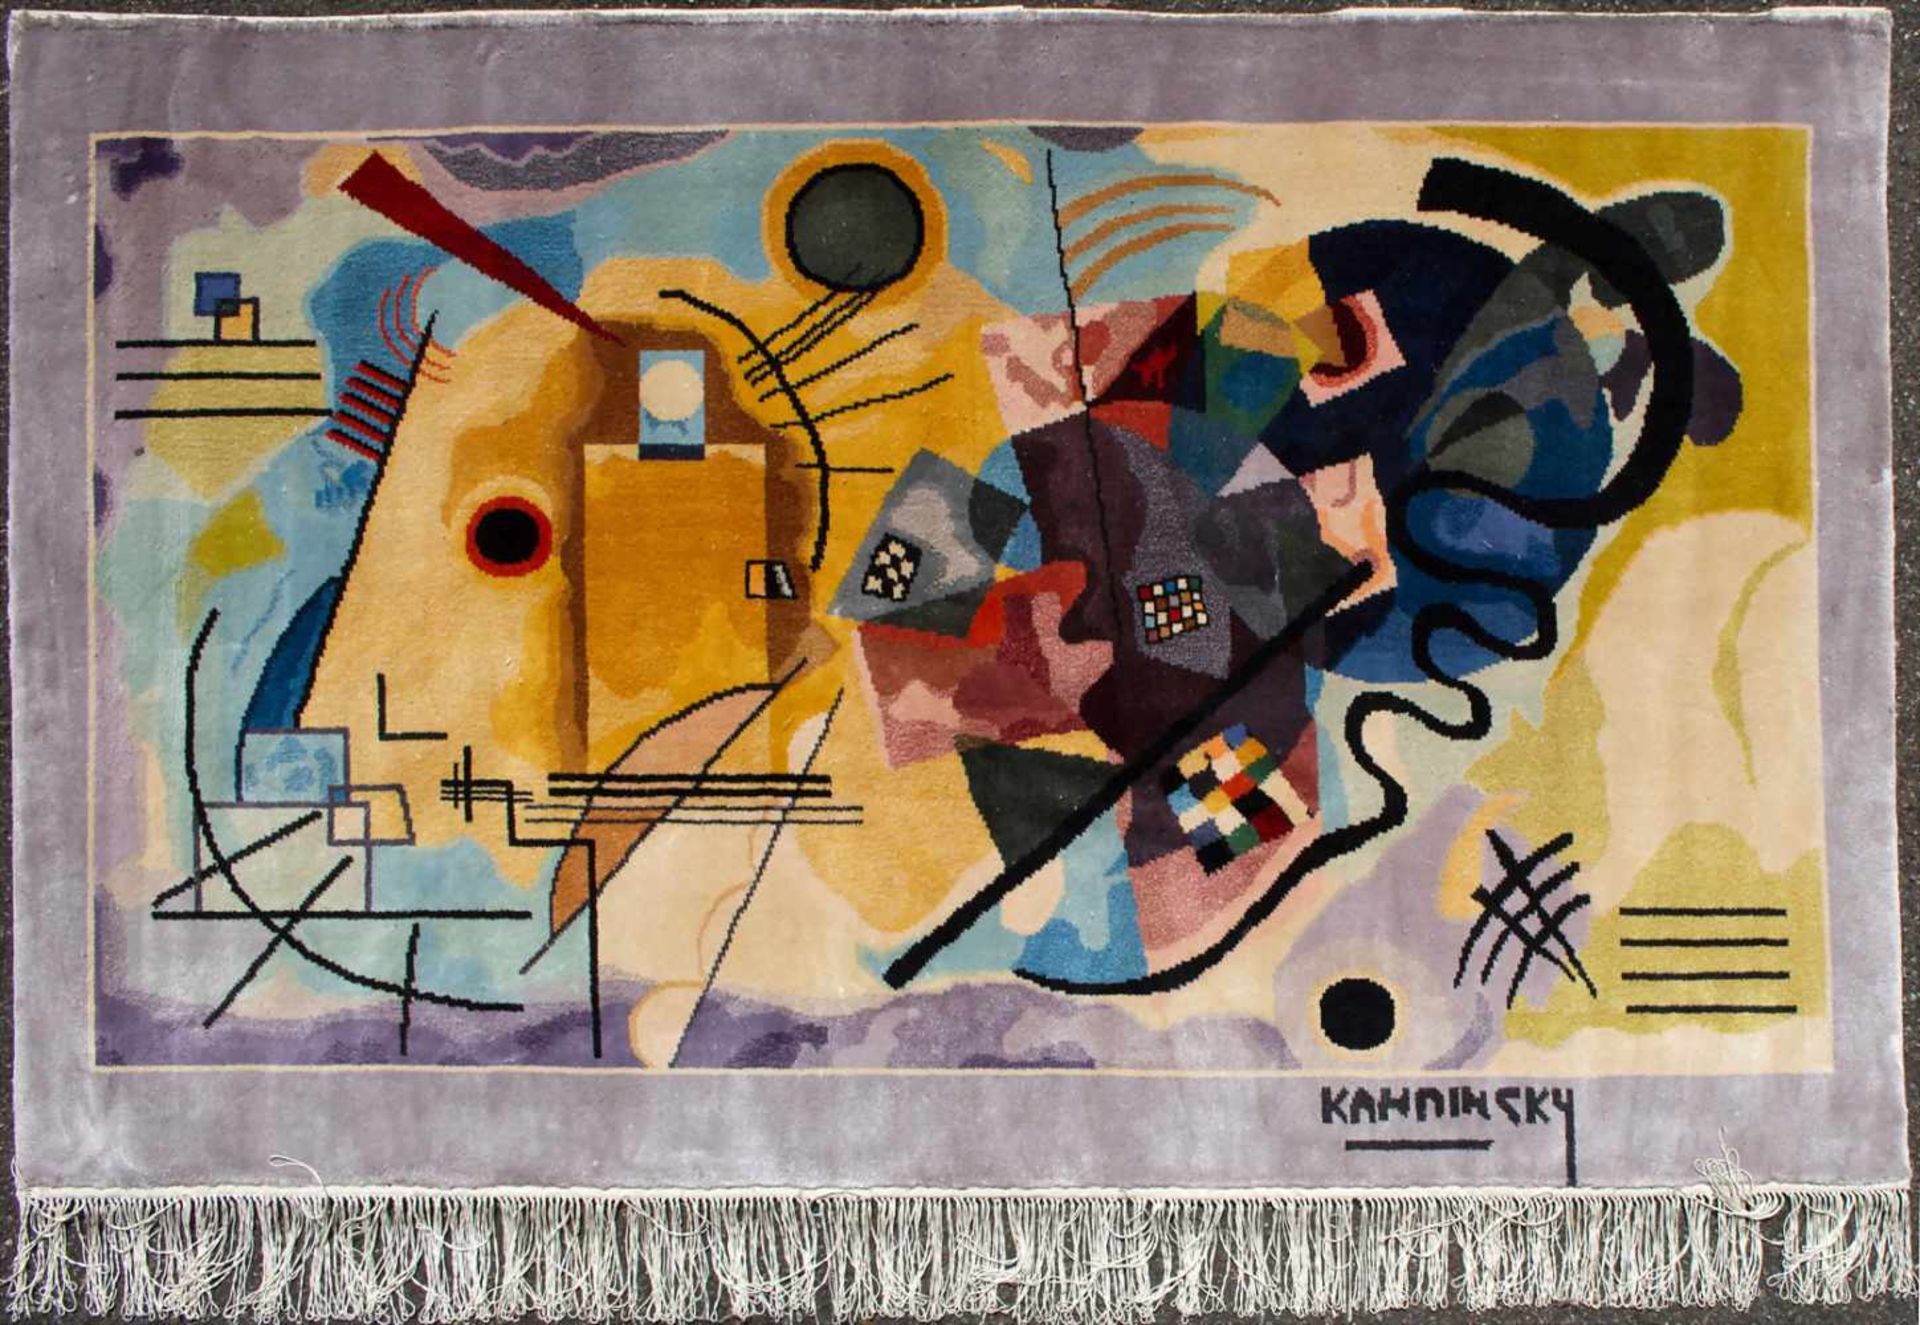 Seidenteppich 'Kandinsky' / A silk carpet 'Kandinsky'Material: Seide auf Seide,Maße: 151 x 93 cm, - Bild 3 aus 3